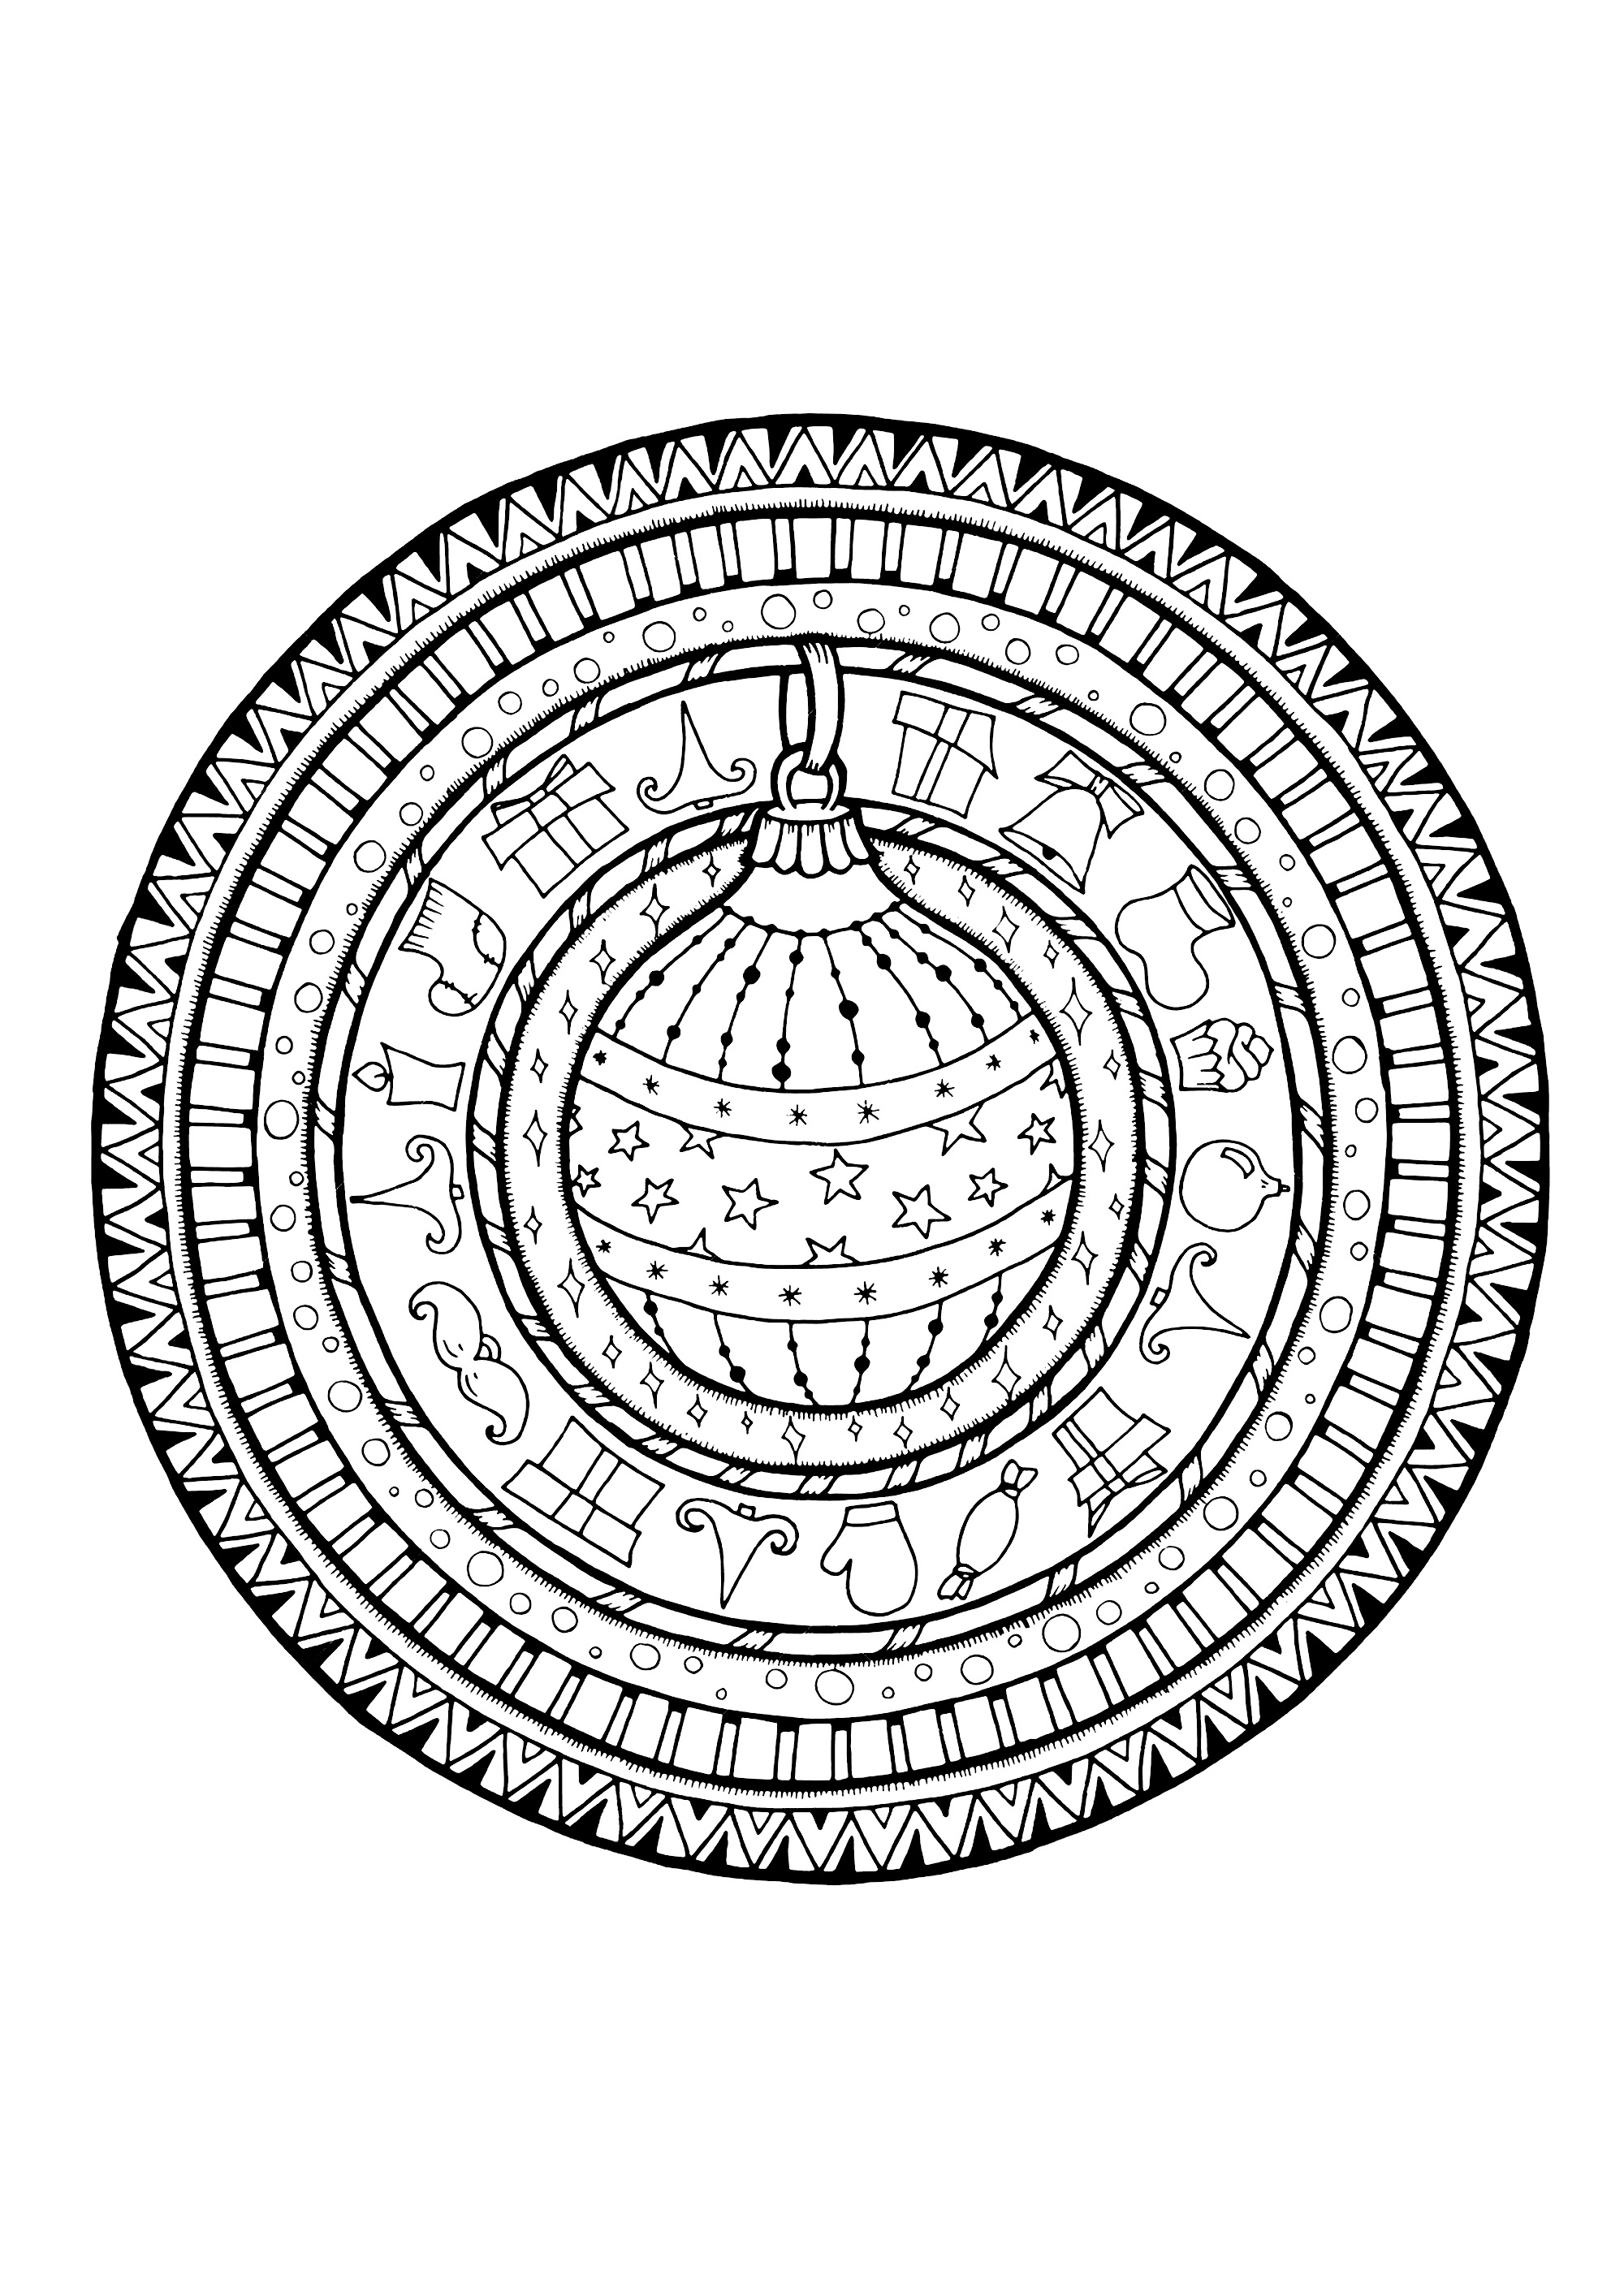 Bonita bola de Natal dentro de uma Mandala, Fonte : 123rf   Artista : dovina